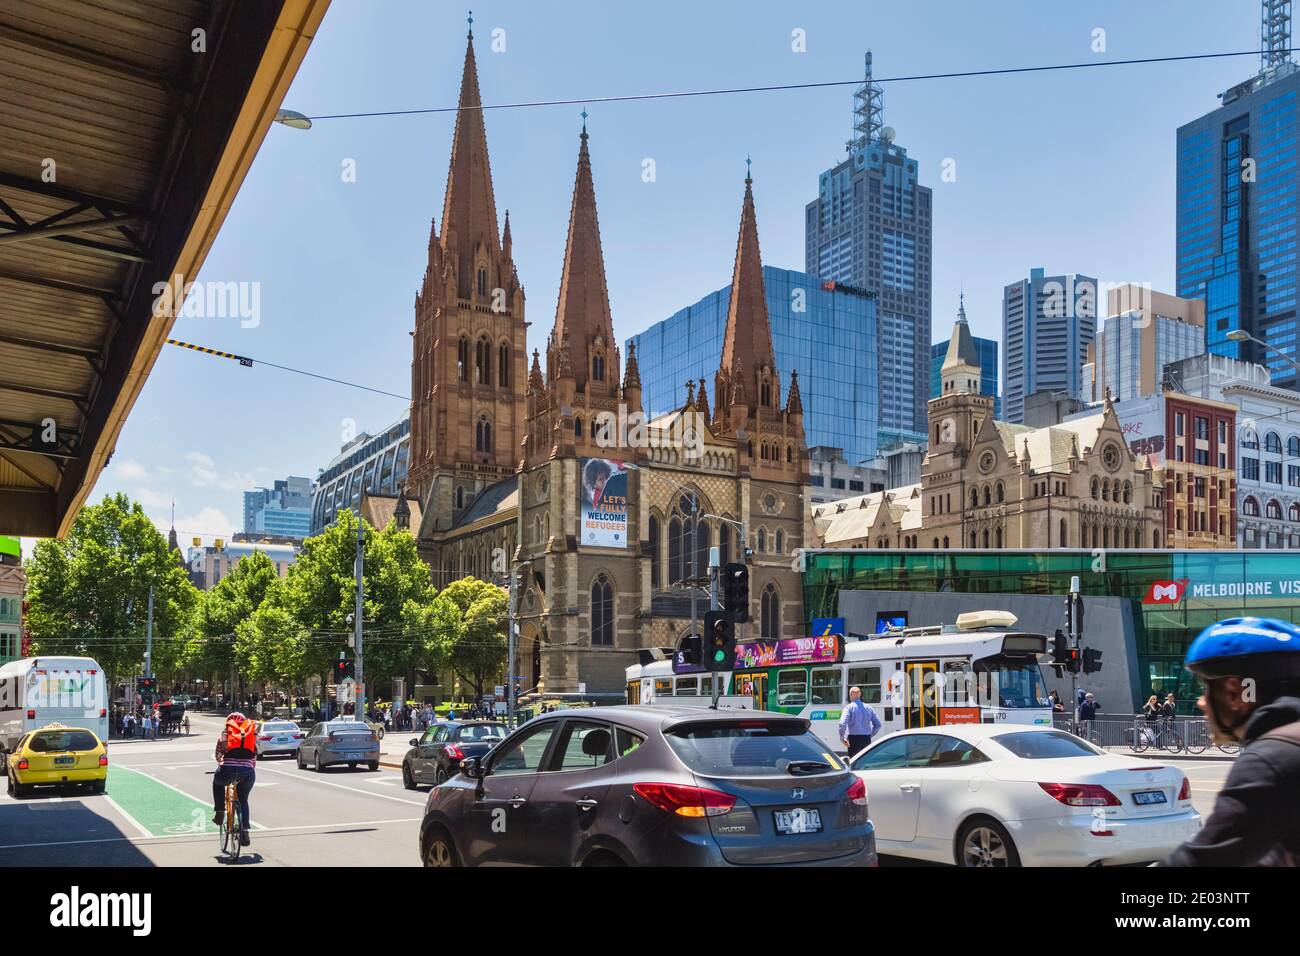 Cathédrale Saint-Paul, Melbourne, Victoria, Australie. La cathédrale anglicane de style néo-gothique a été conçue par l'architecte anglais William Butterfi Banque D'Images